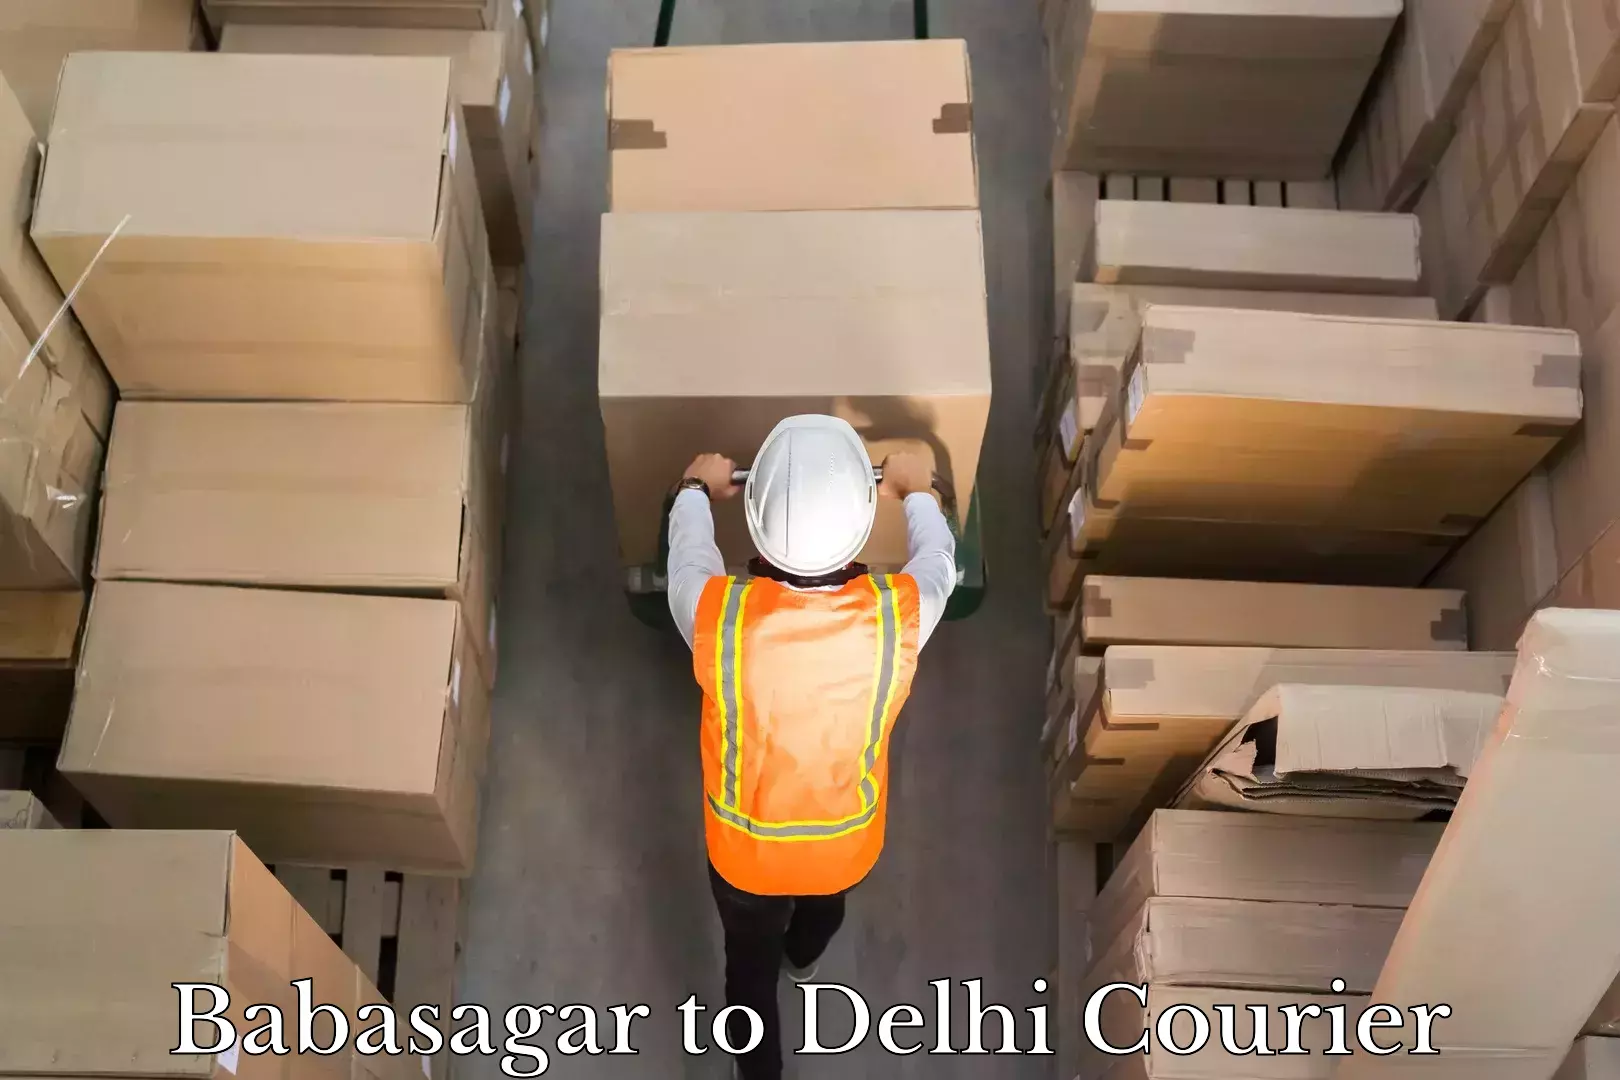 Air courier services Babasagar to Delhi